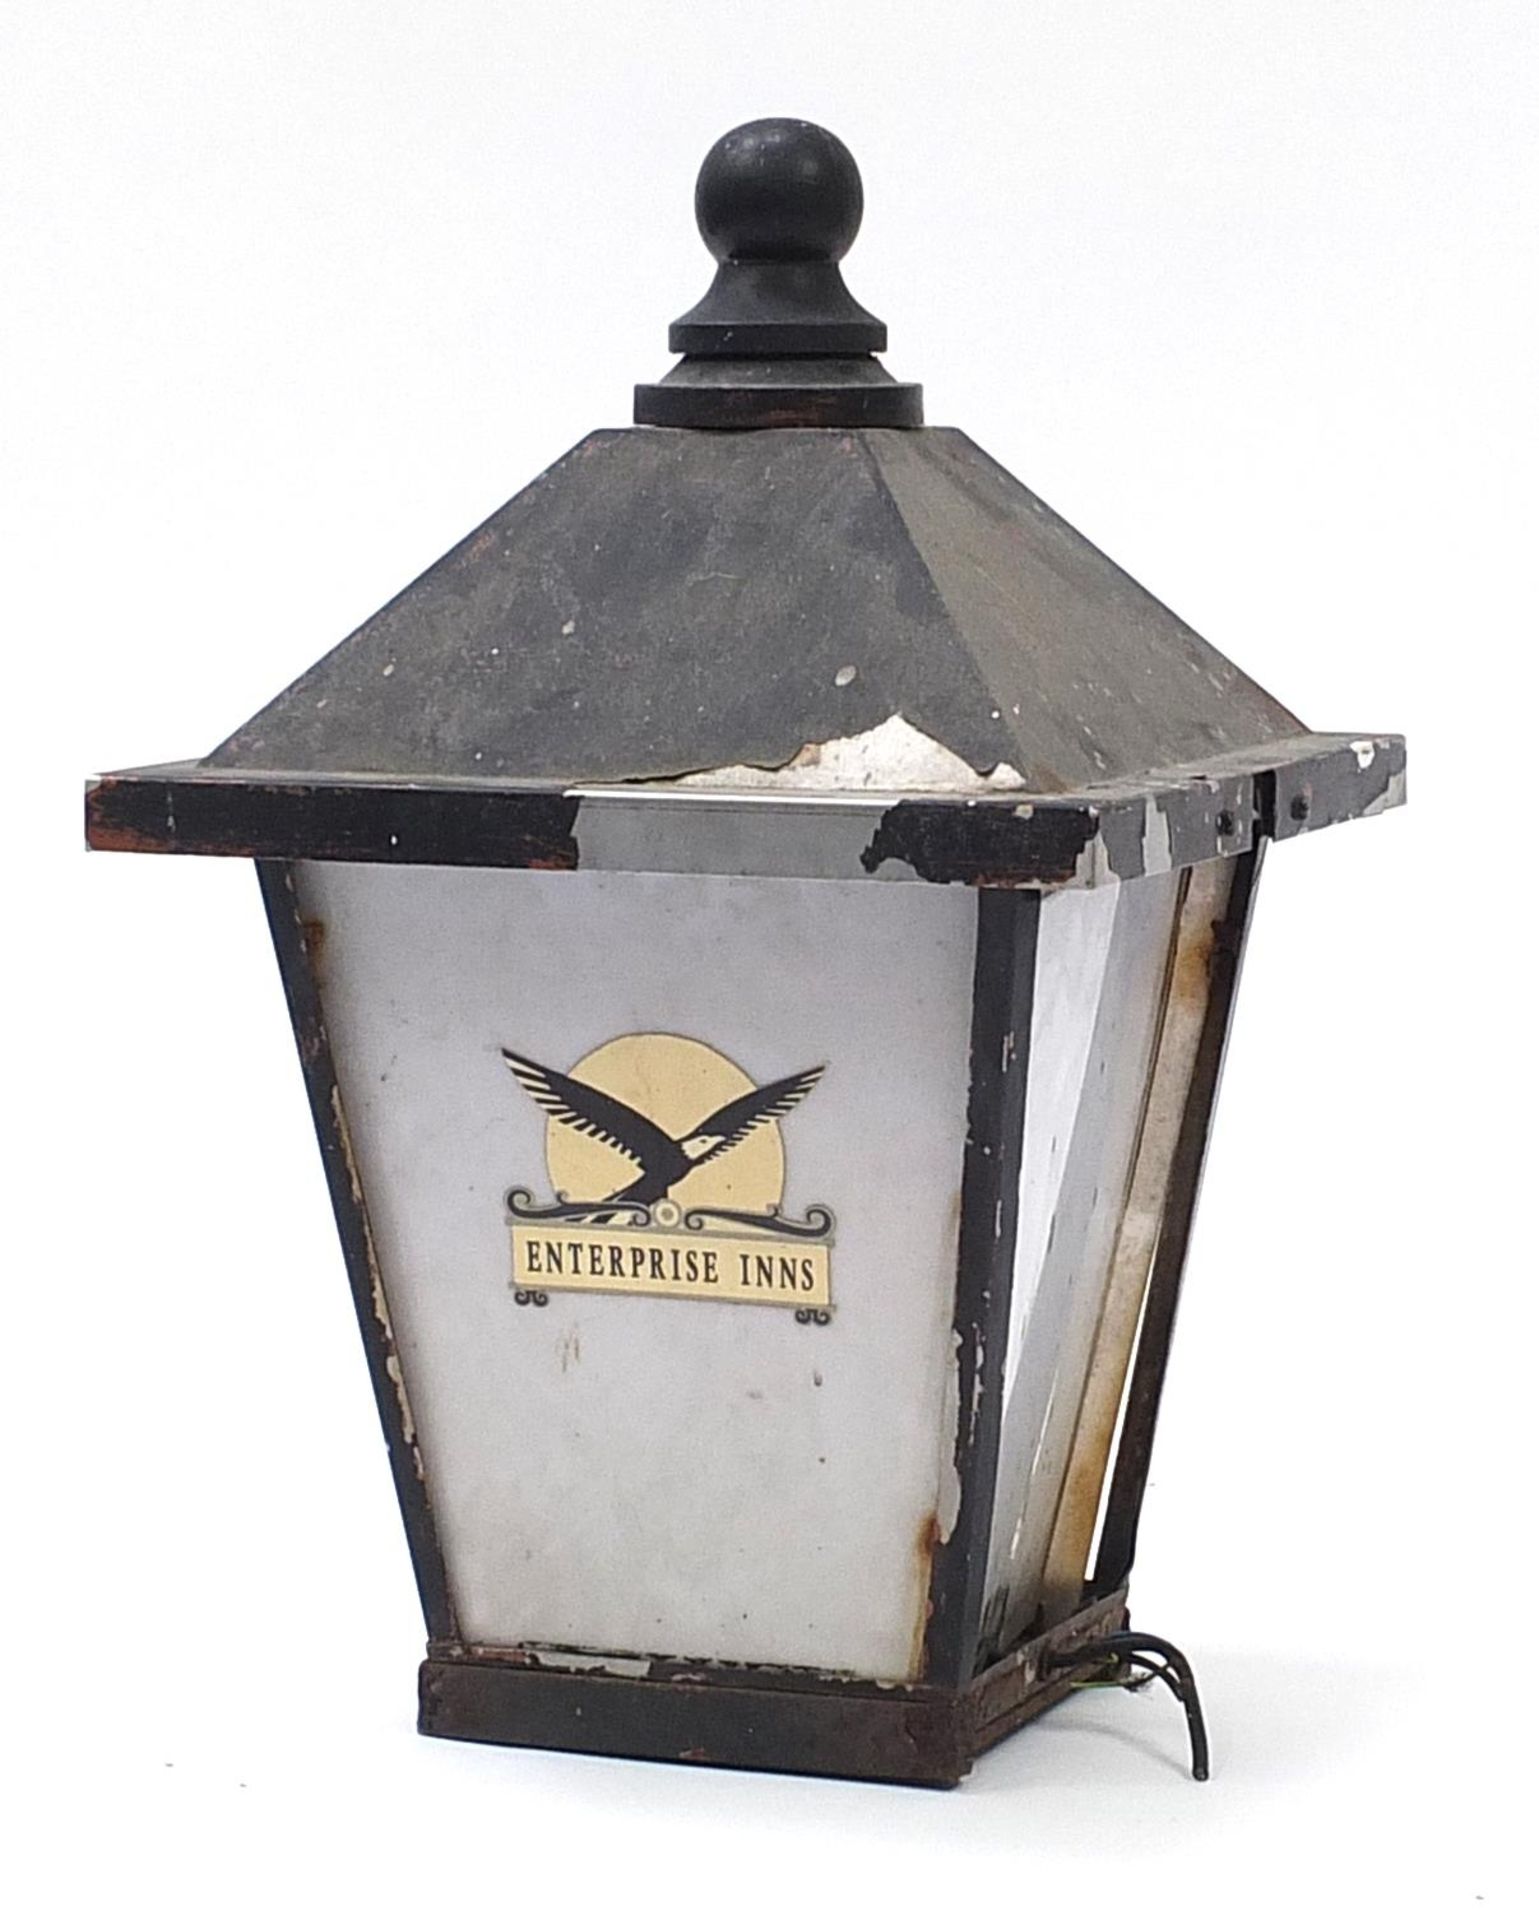 Vintage black painted metal Enterprise Inns advertising street lantern, 68cm high - Image 2 of 3